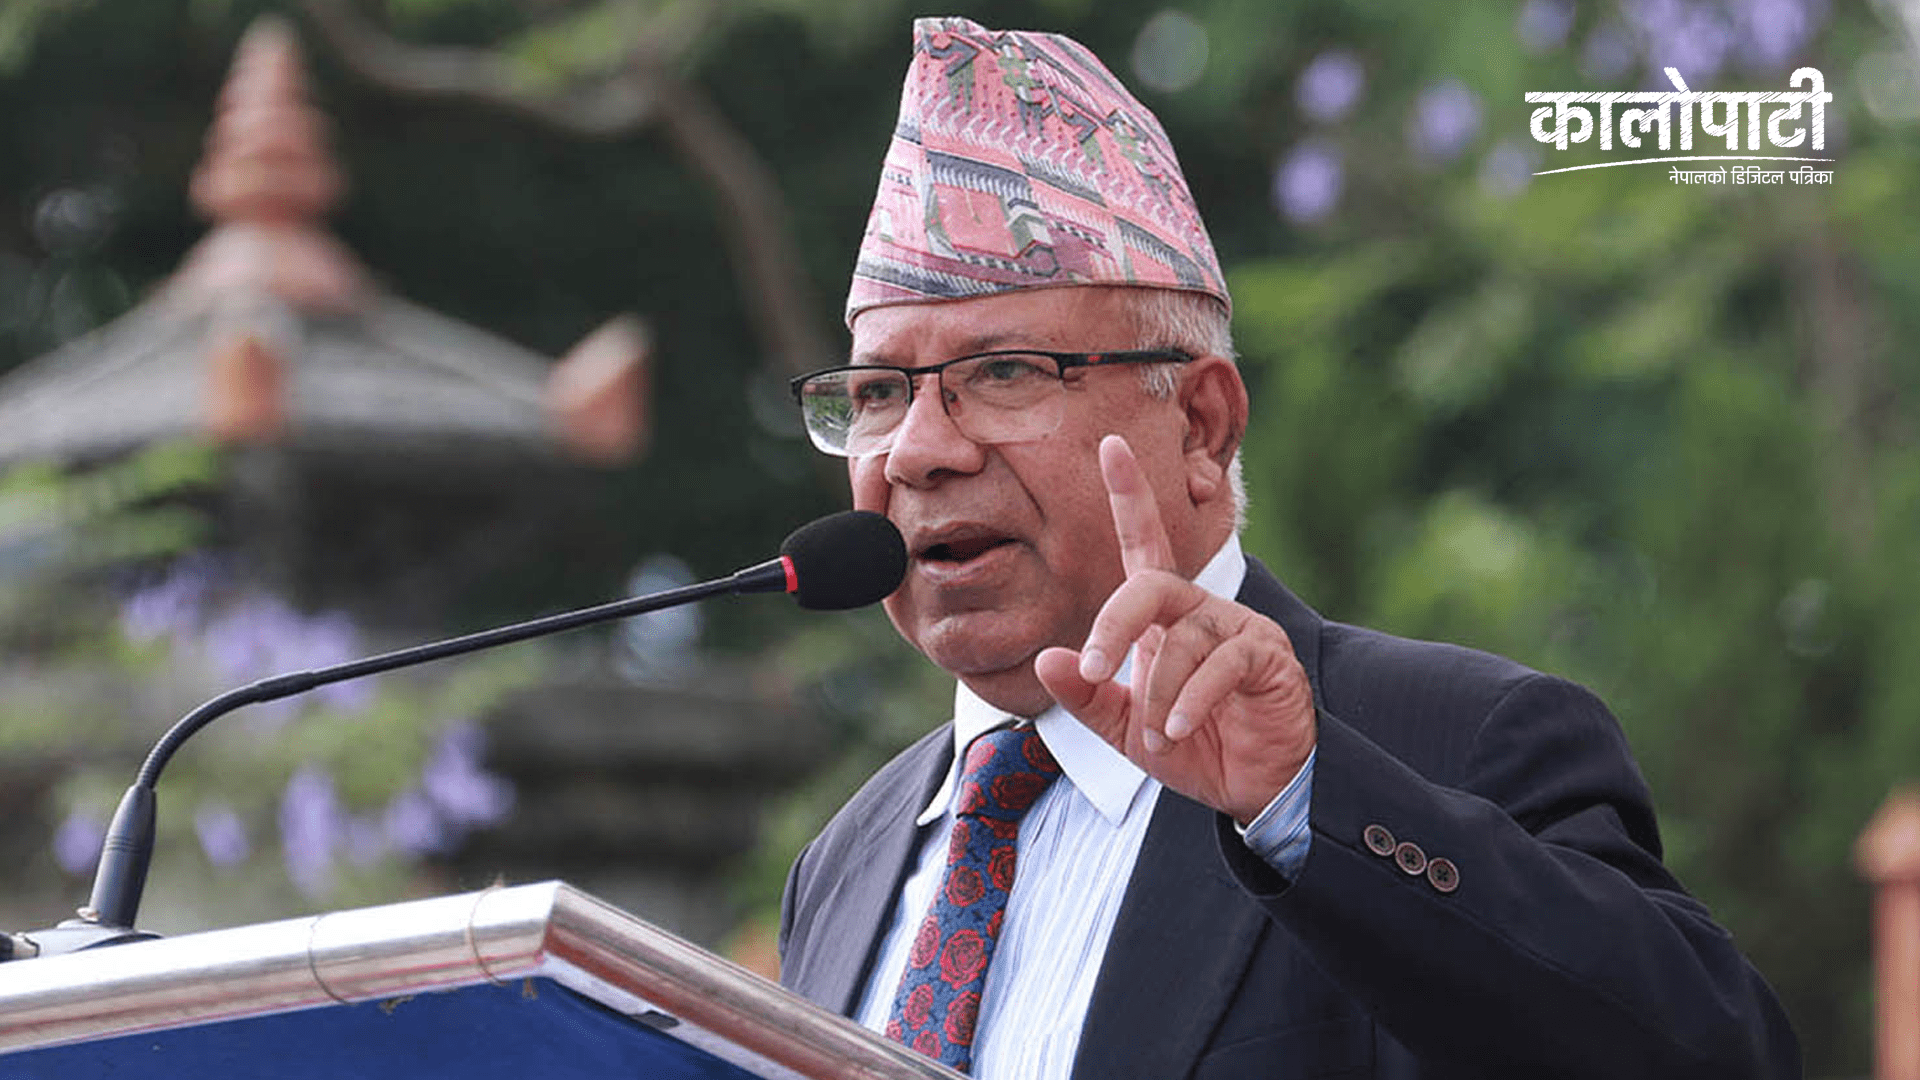 ‘सङ्घीय लोकतान्त्रिक गणतन्त्रको रक्षा गरी मुलुकमा विकास तथा समृद्धि कायम गर्नुपर्छ’:अध्यक्ष नेपाल